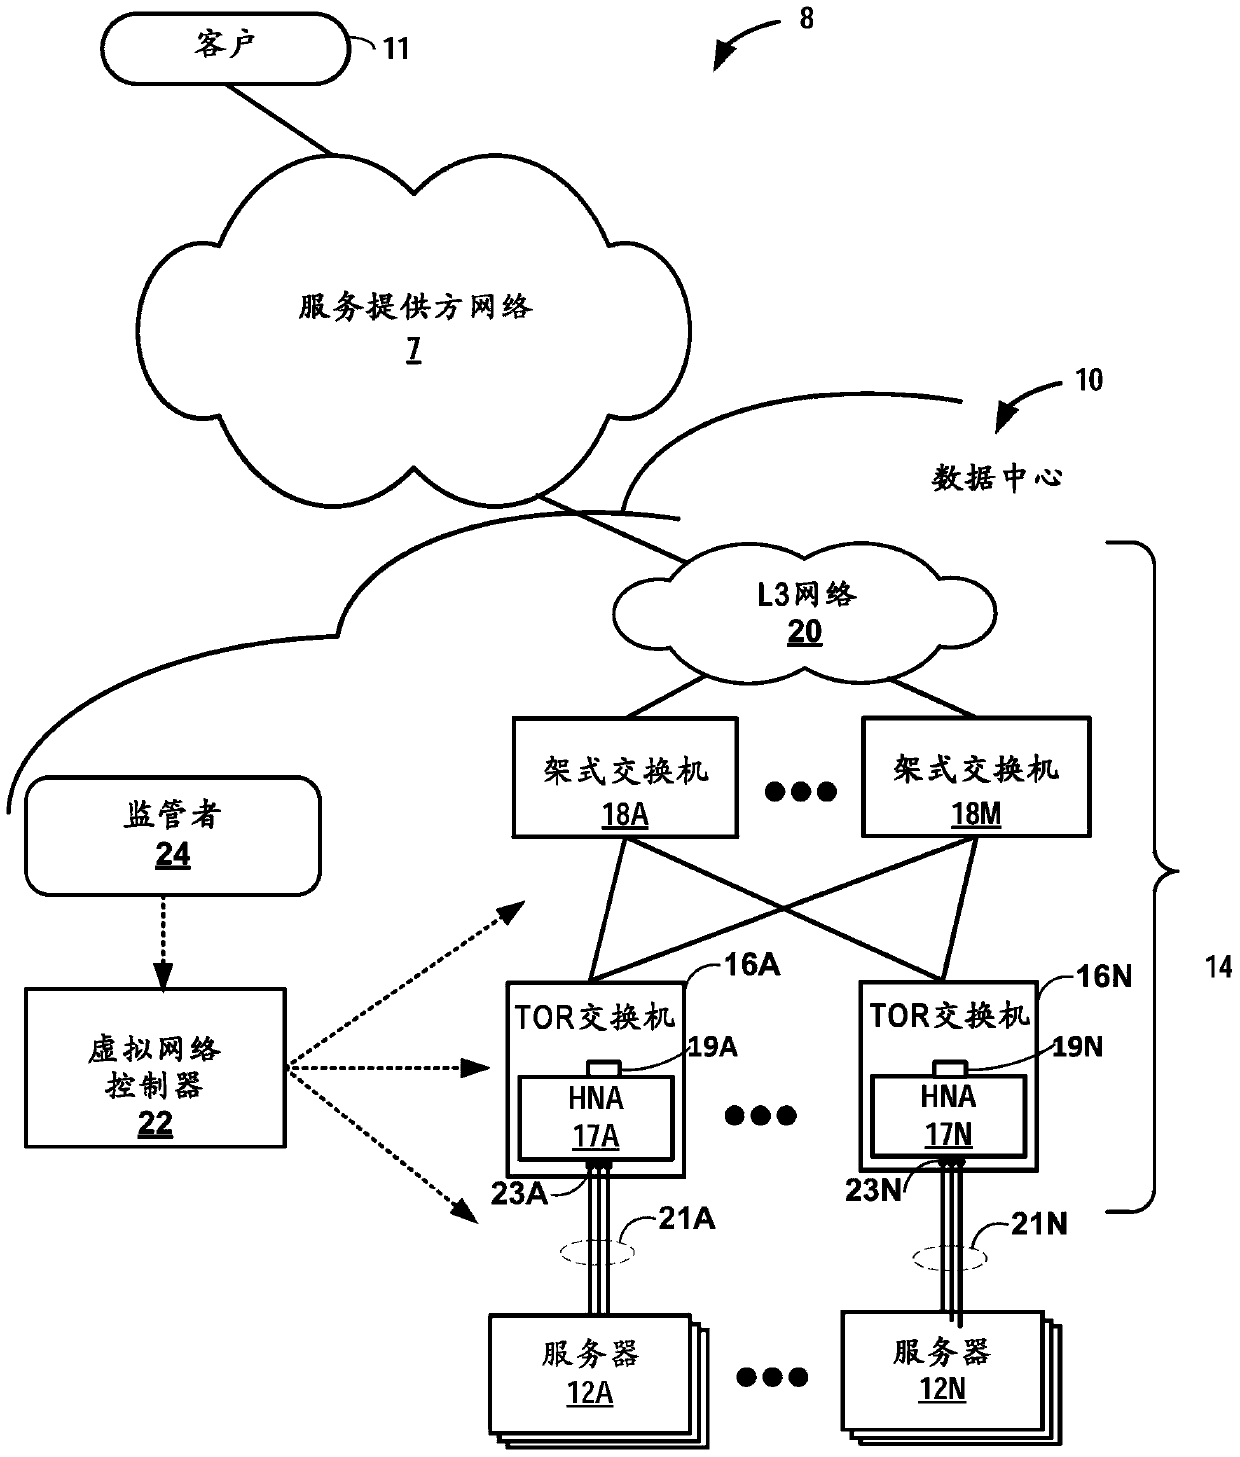 PCIE-based Host Network Accelerator (HNA) for Data Center Overlay Networking